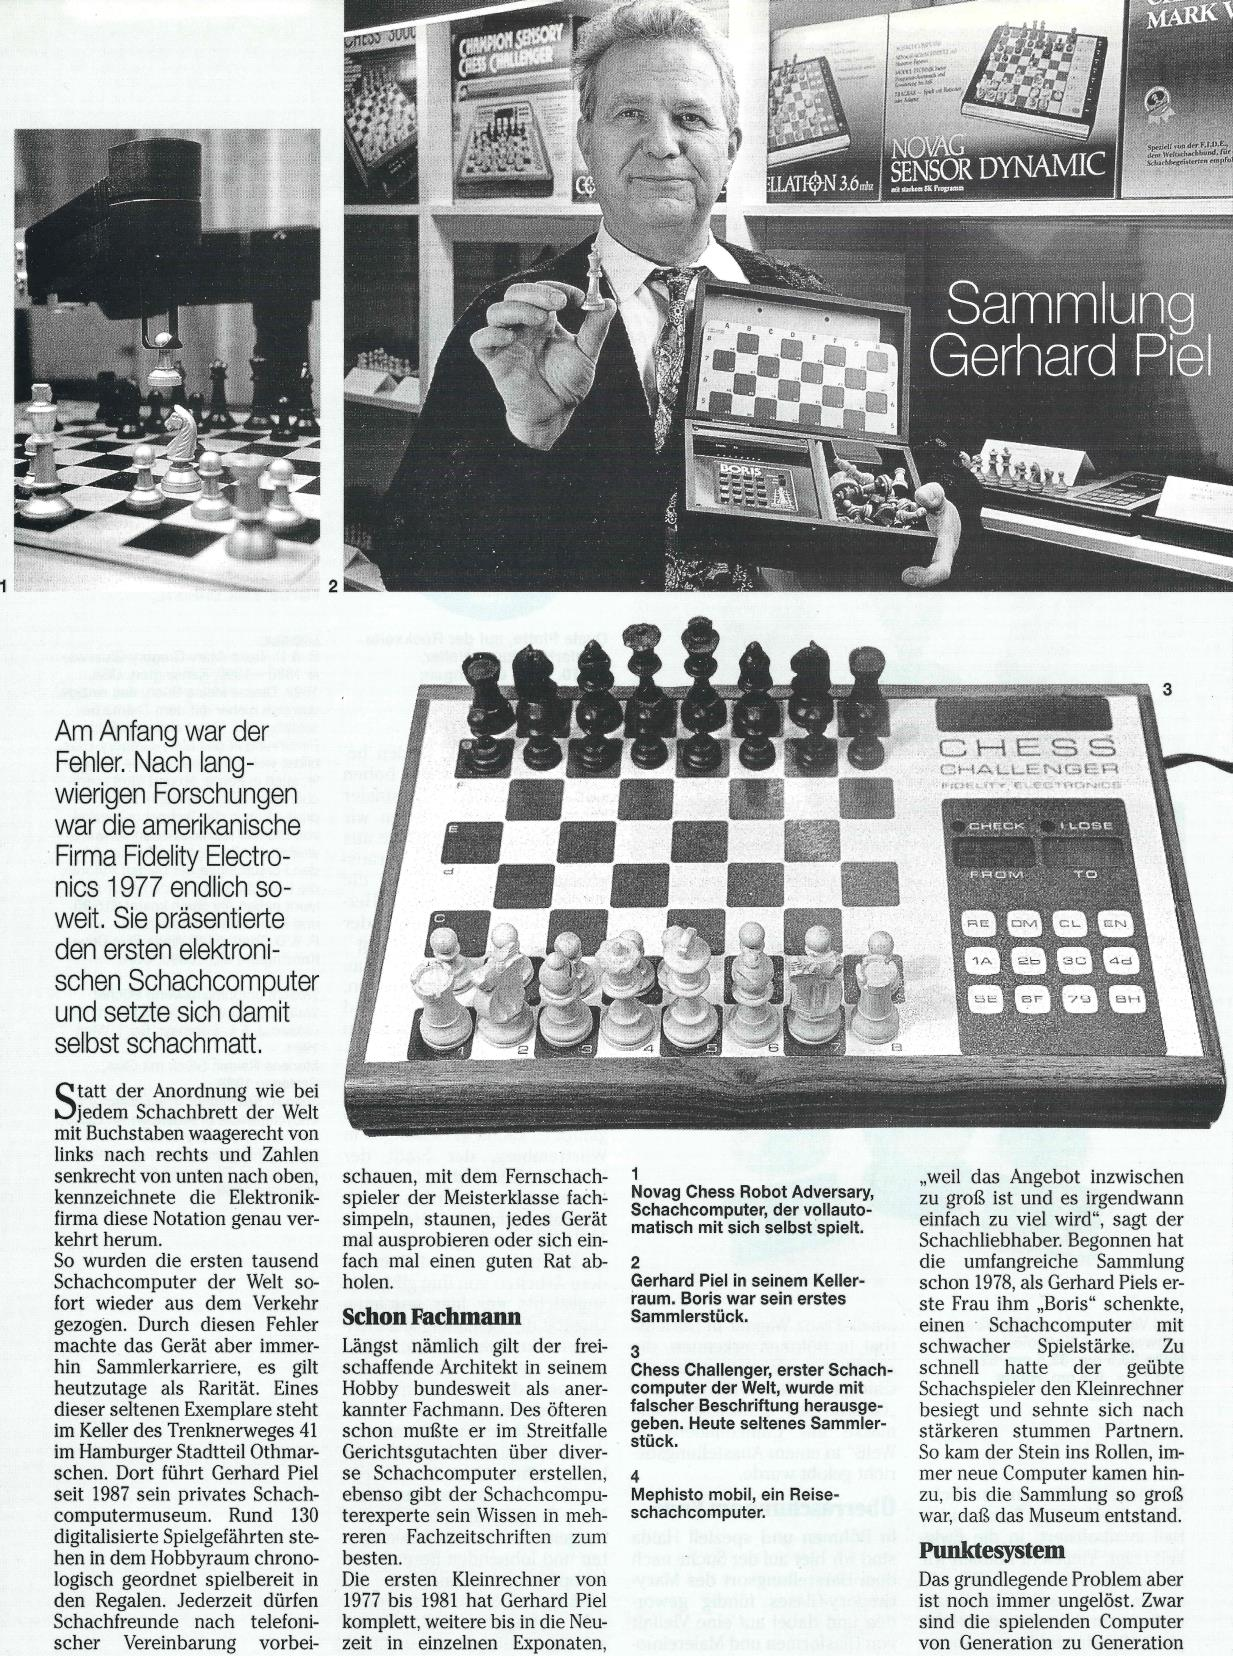 Bericht über Sammler Gerhard Piel Schachcomputermuseum (Quelle: Zeitschrift